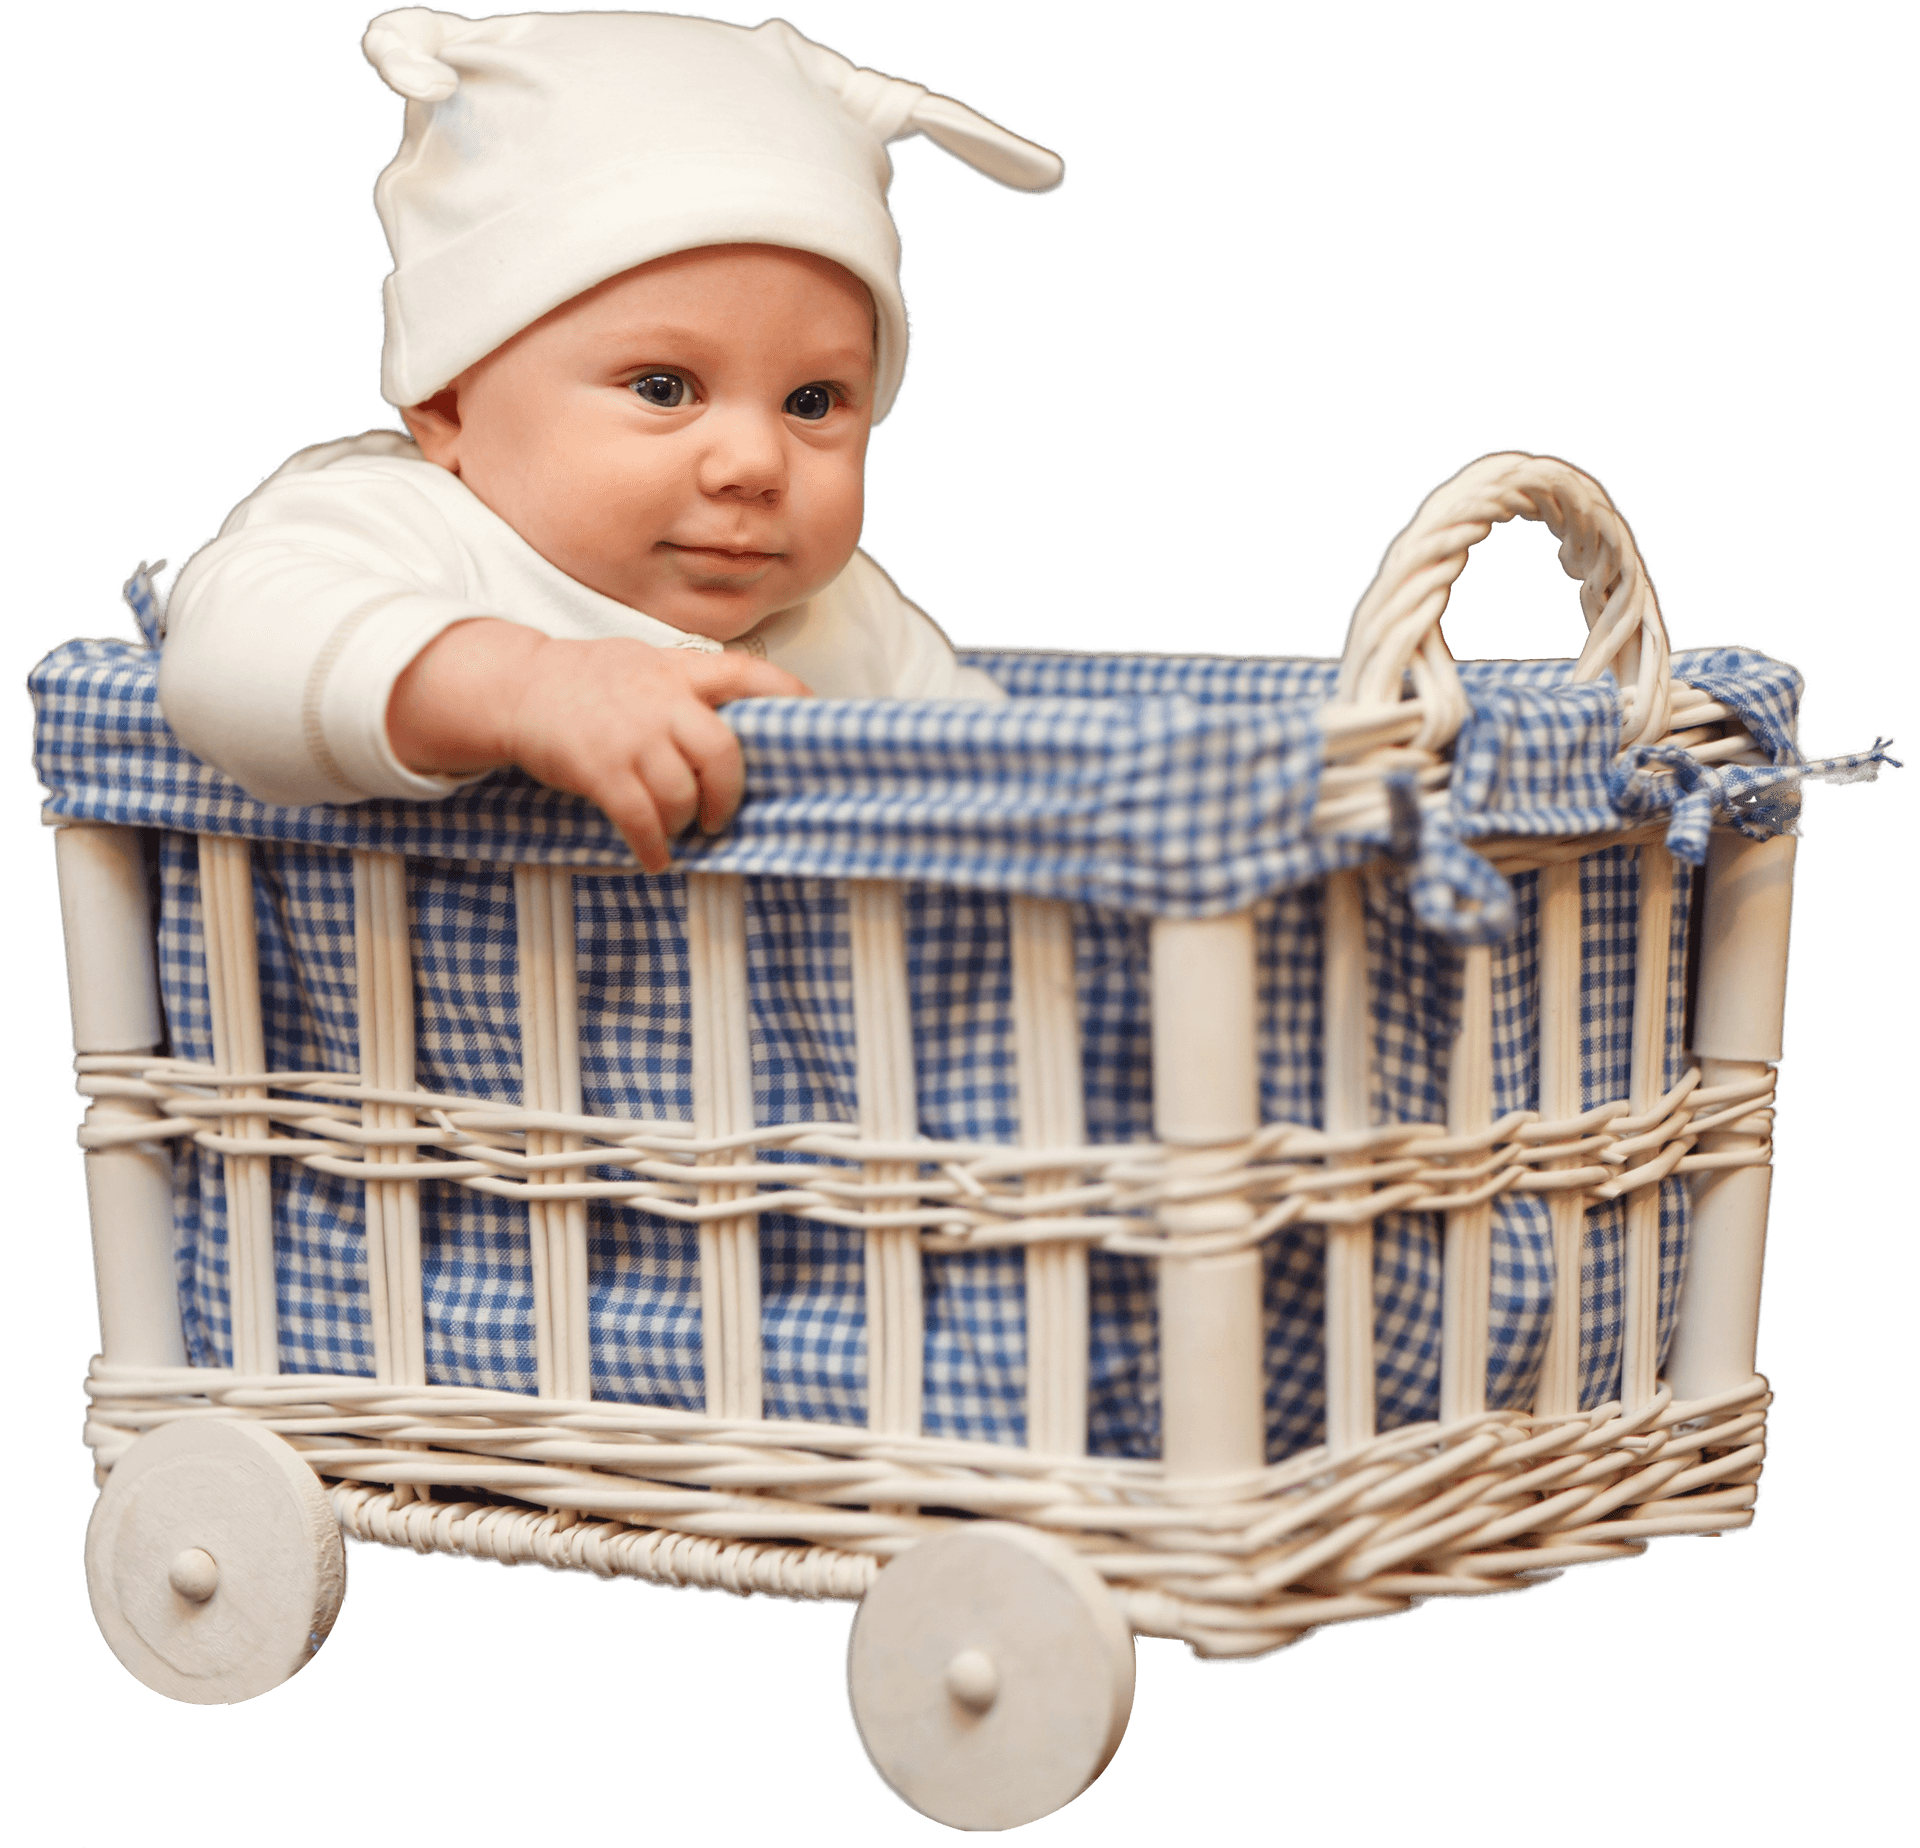 Babyin Wicker Cart Cute Outfit PNG